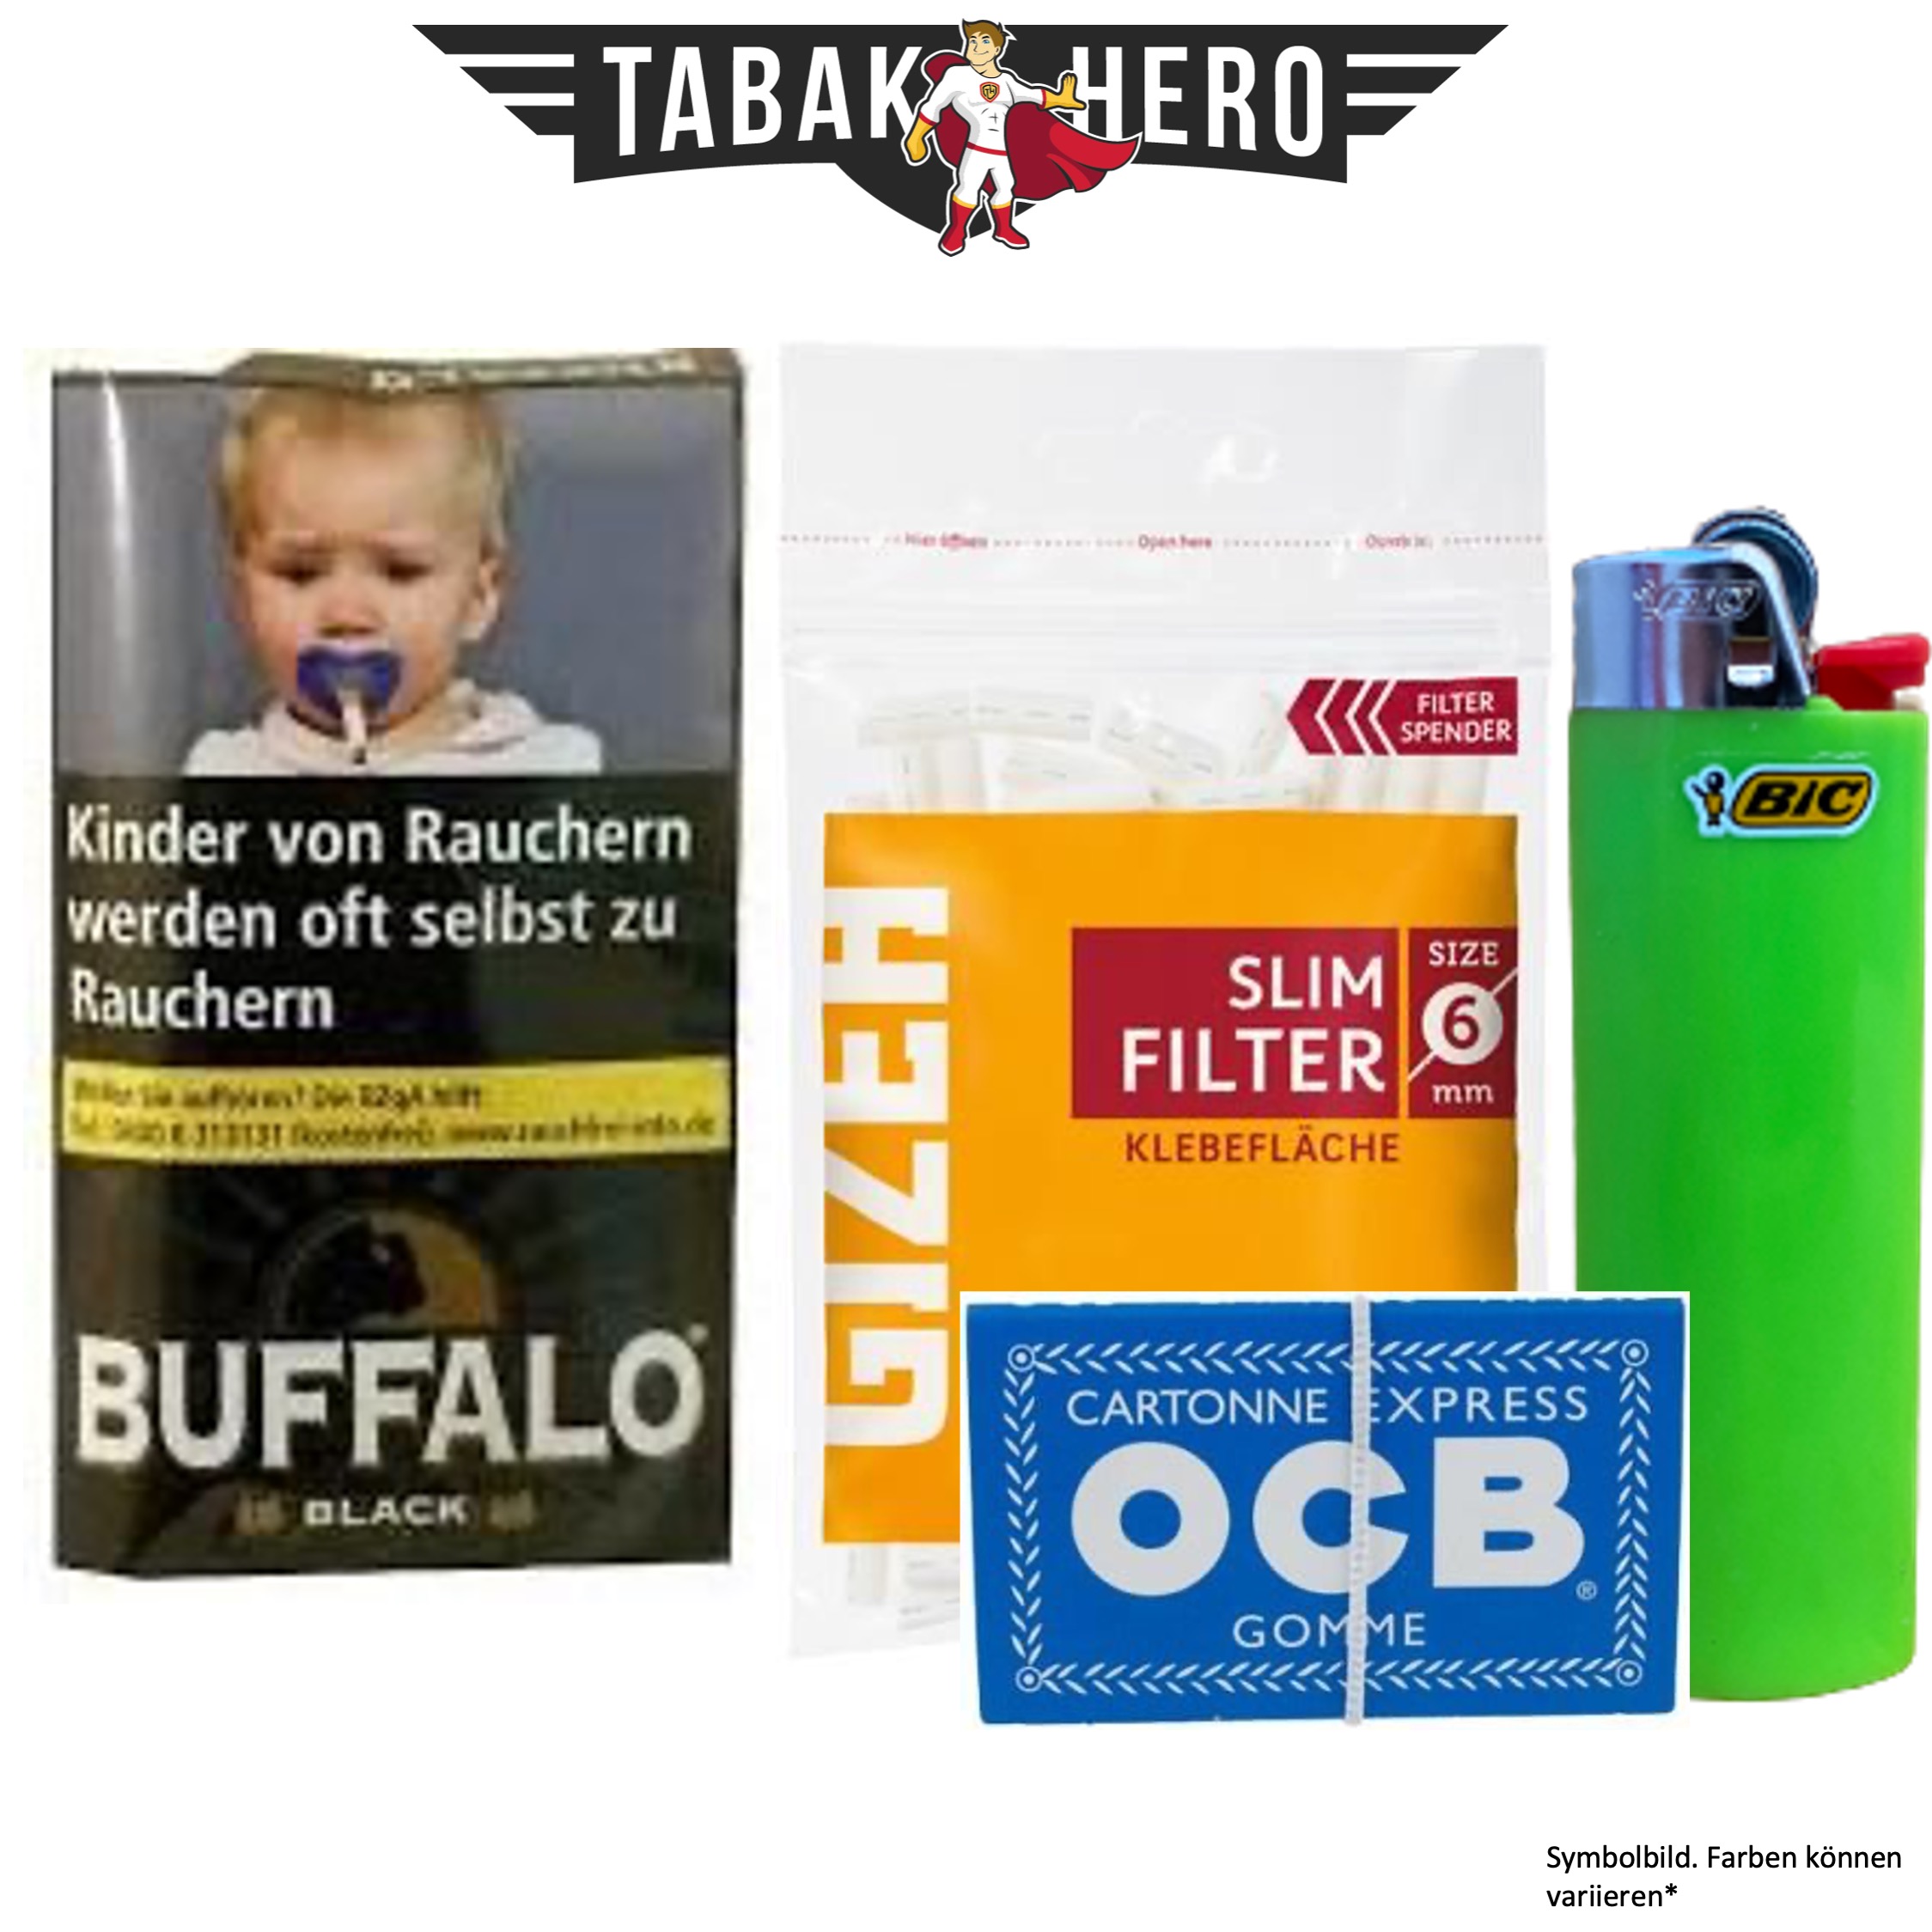 Drehset Buffalo Zware Black 40g + Gizeh 6mm Filter & OCB 100 Blatt Papier + BIC Feuerzeug